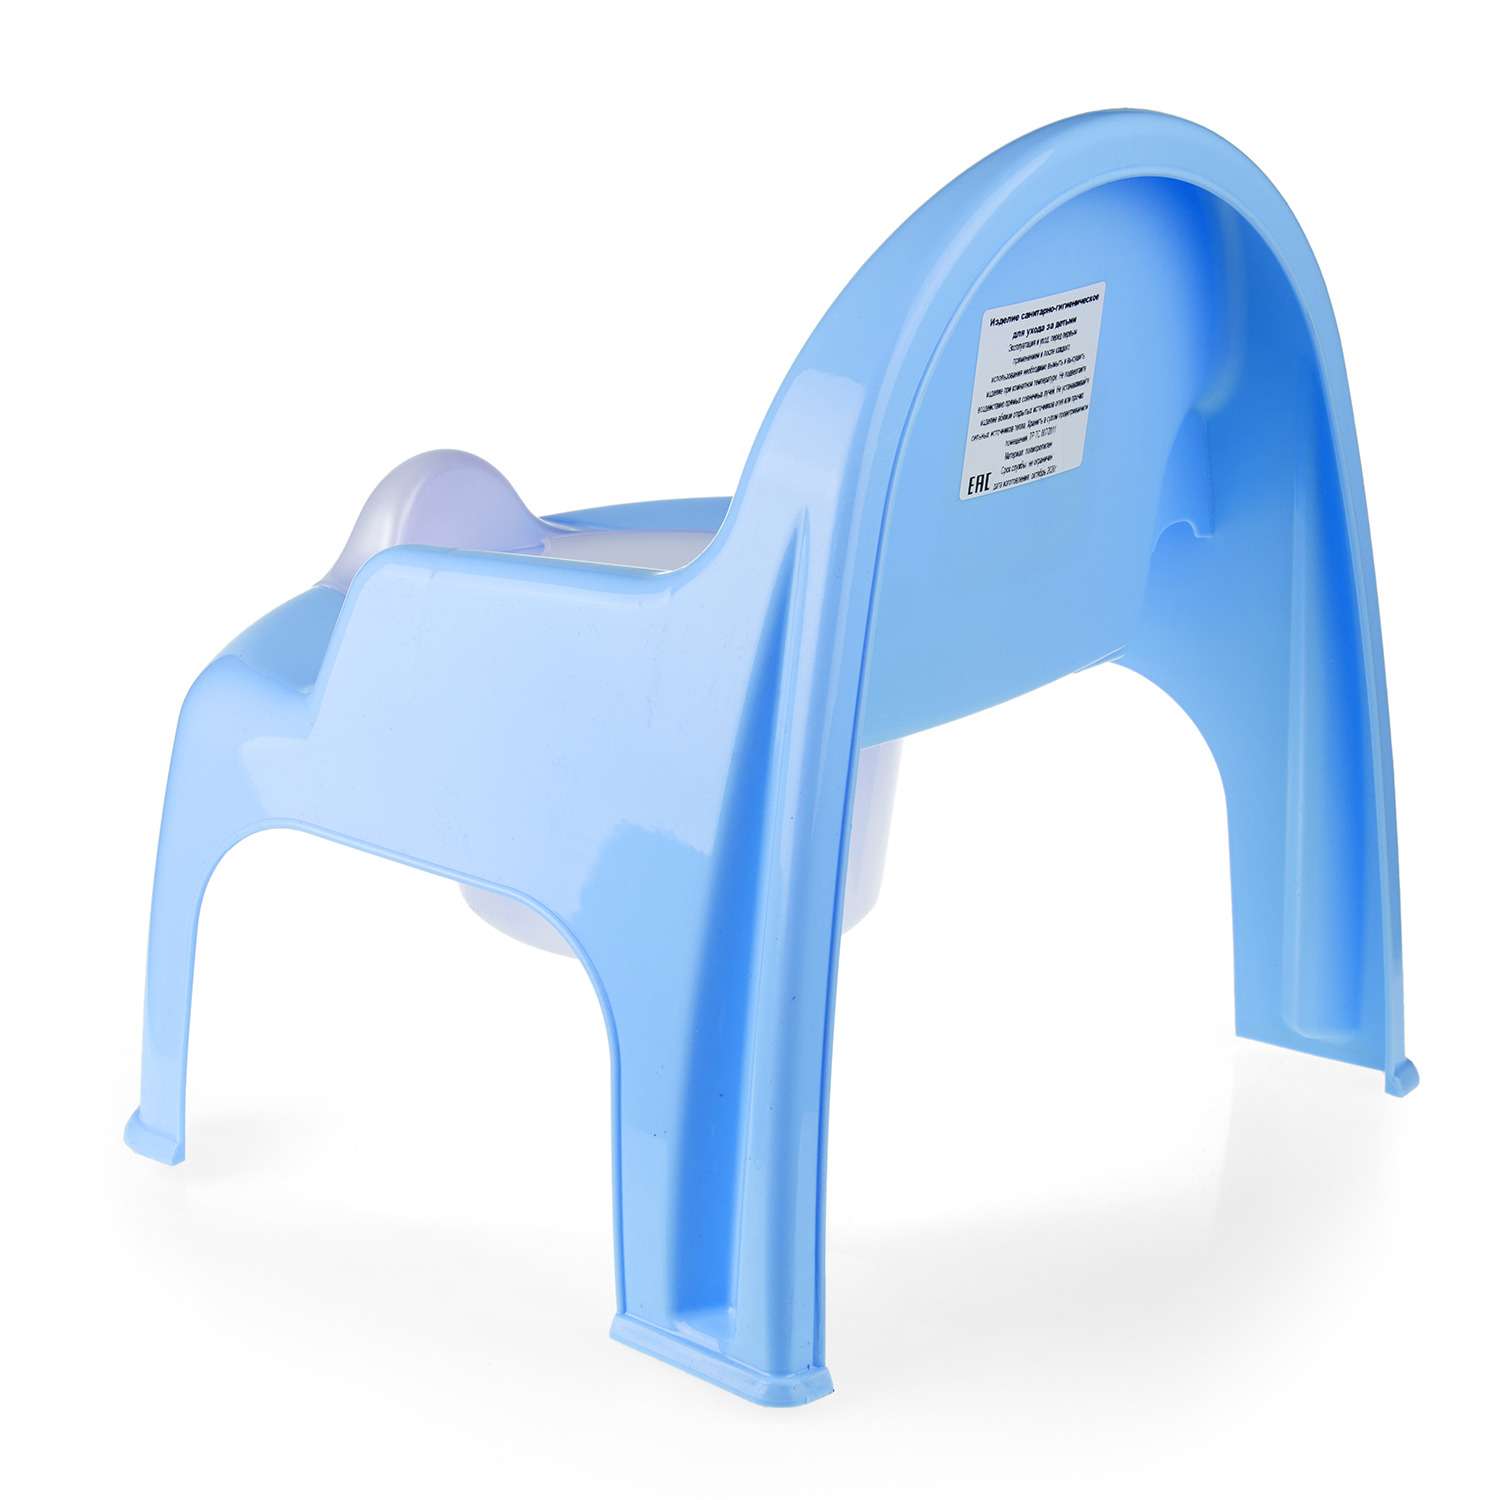 Горшок детский elfplast стульчик синий - фото 3